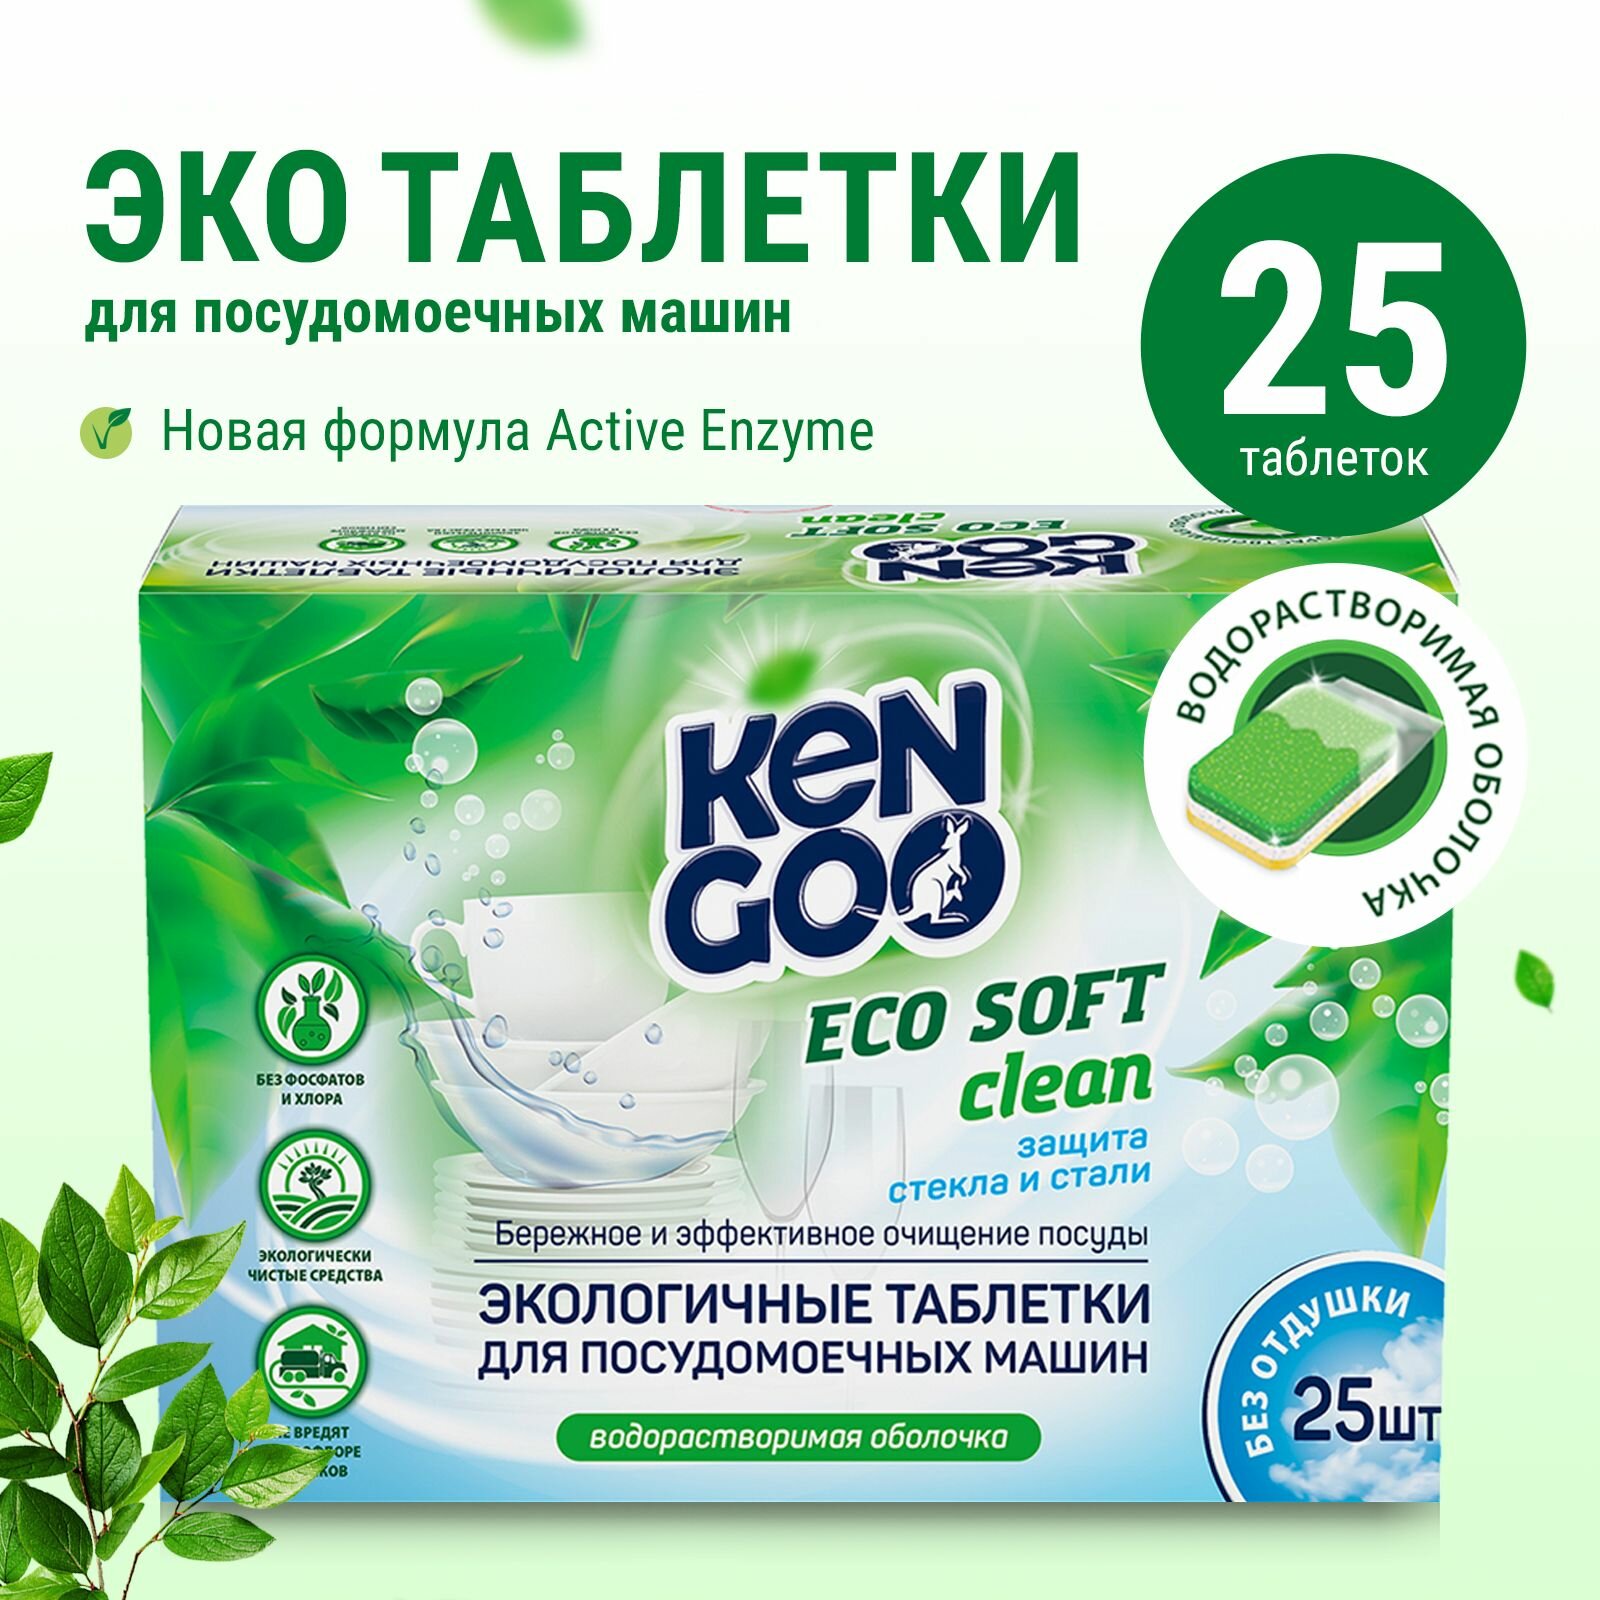 Таблетки для посудомоечной машины Kengoo Eco Soft Clean водорастворимые для детской посуды, эко, 25 шт